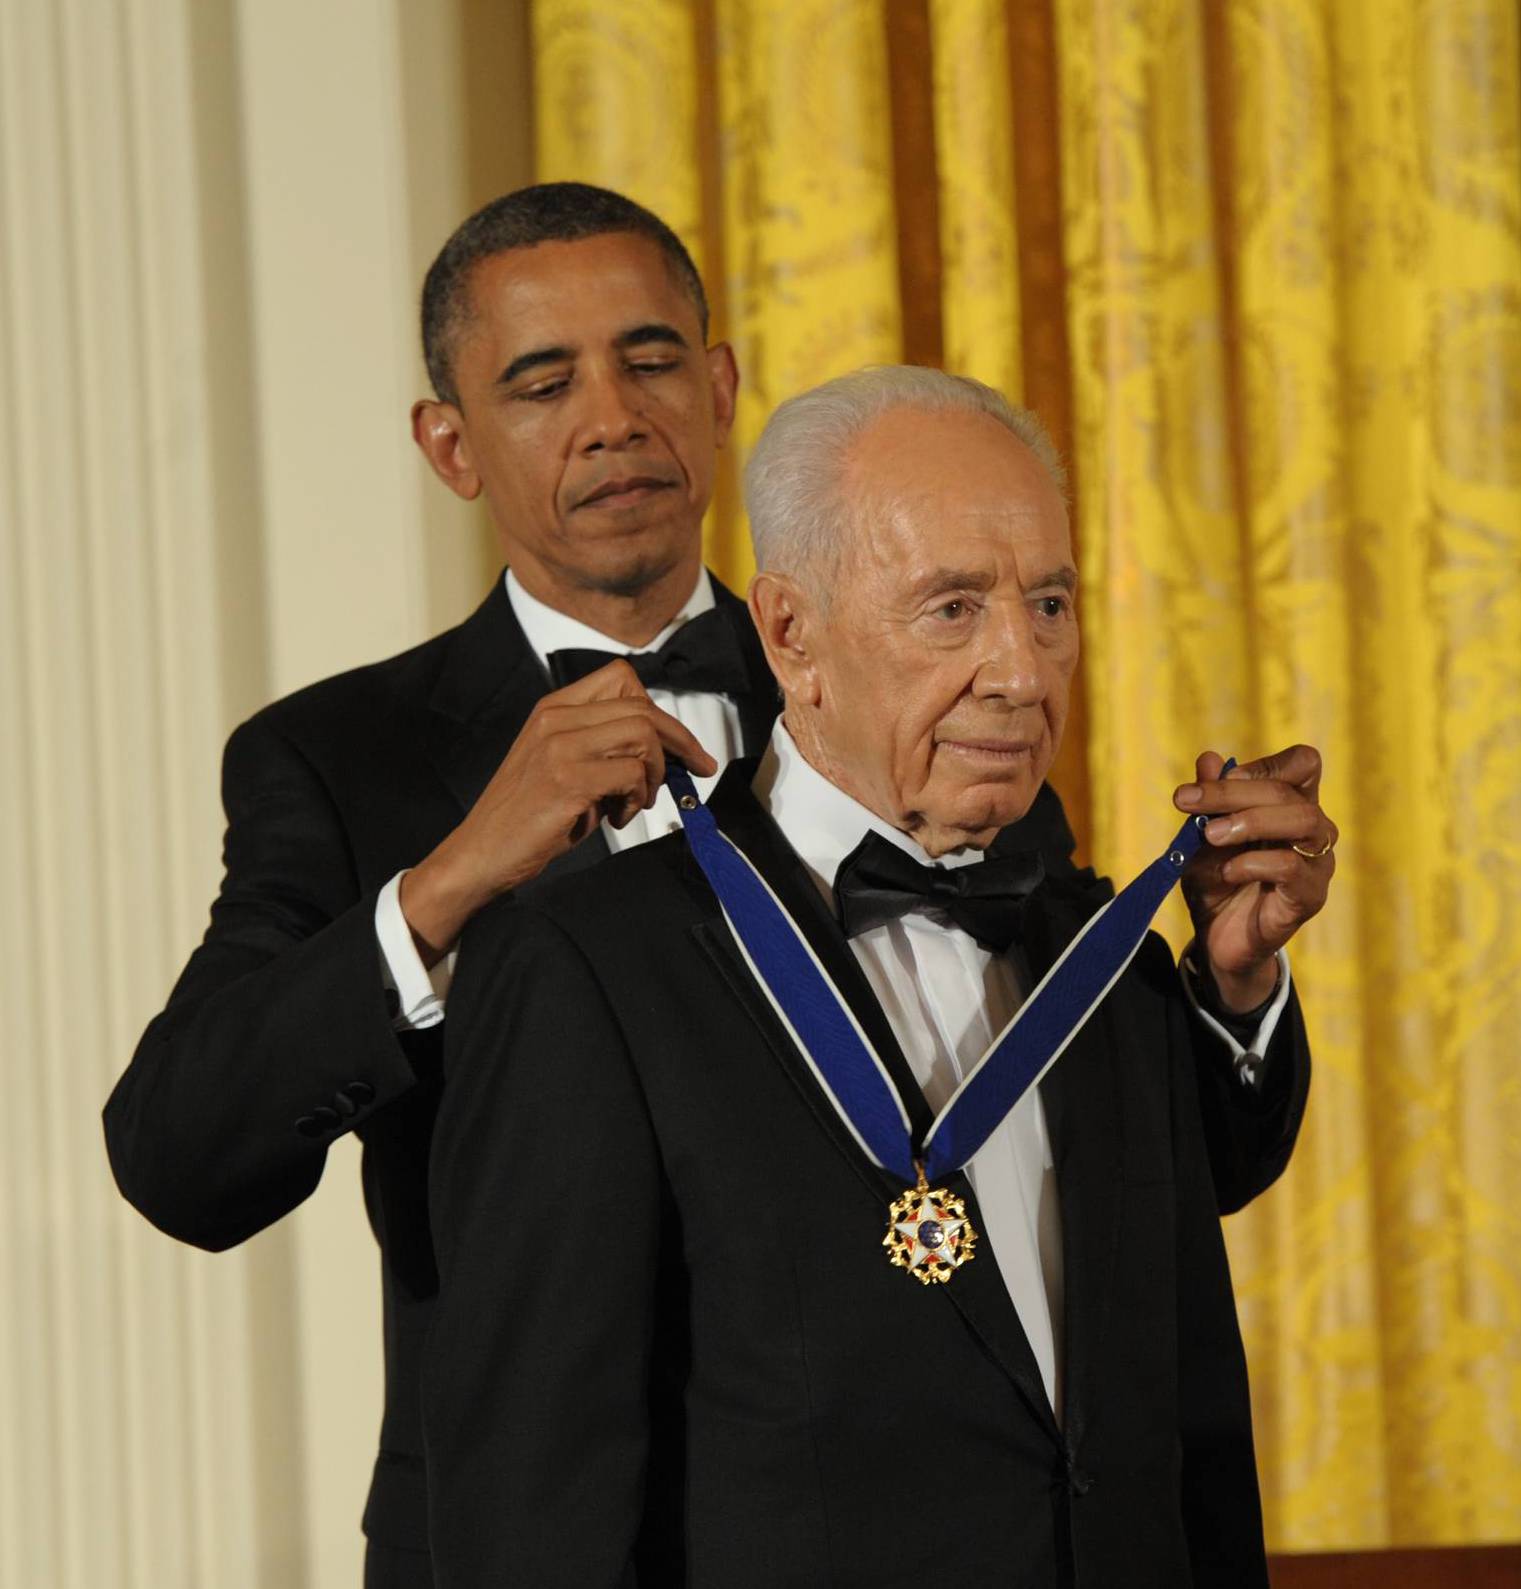 הנשיא פרס קיבל מאובמה את מדליית החירות: "את הקשרים בינינו אי אפשר לשבור"